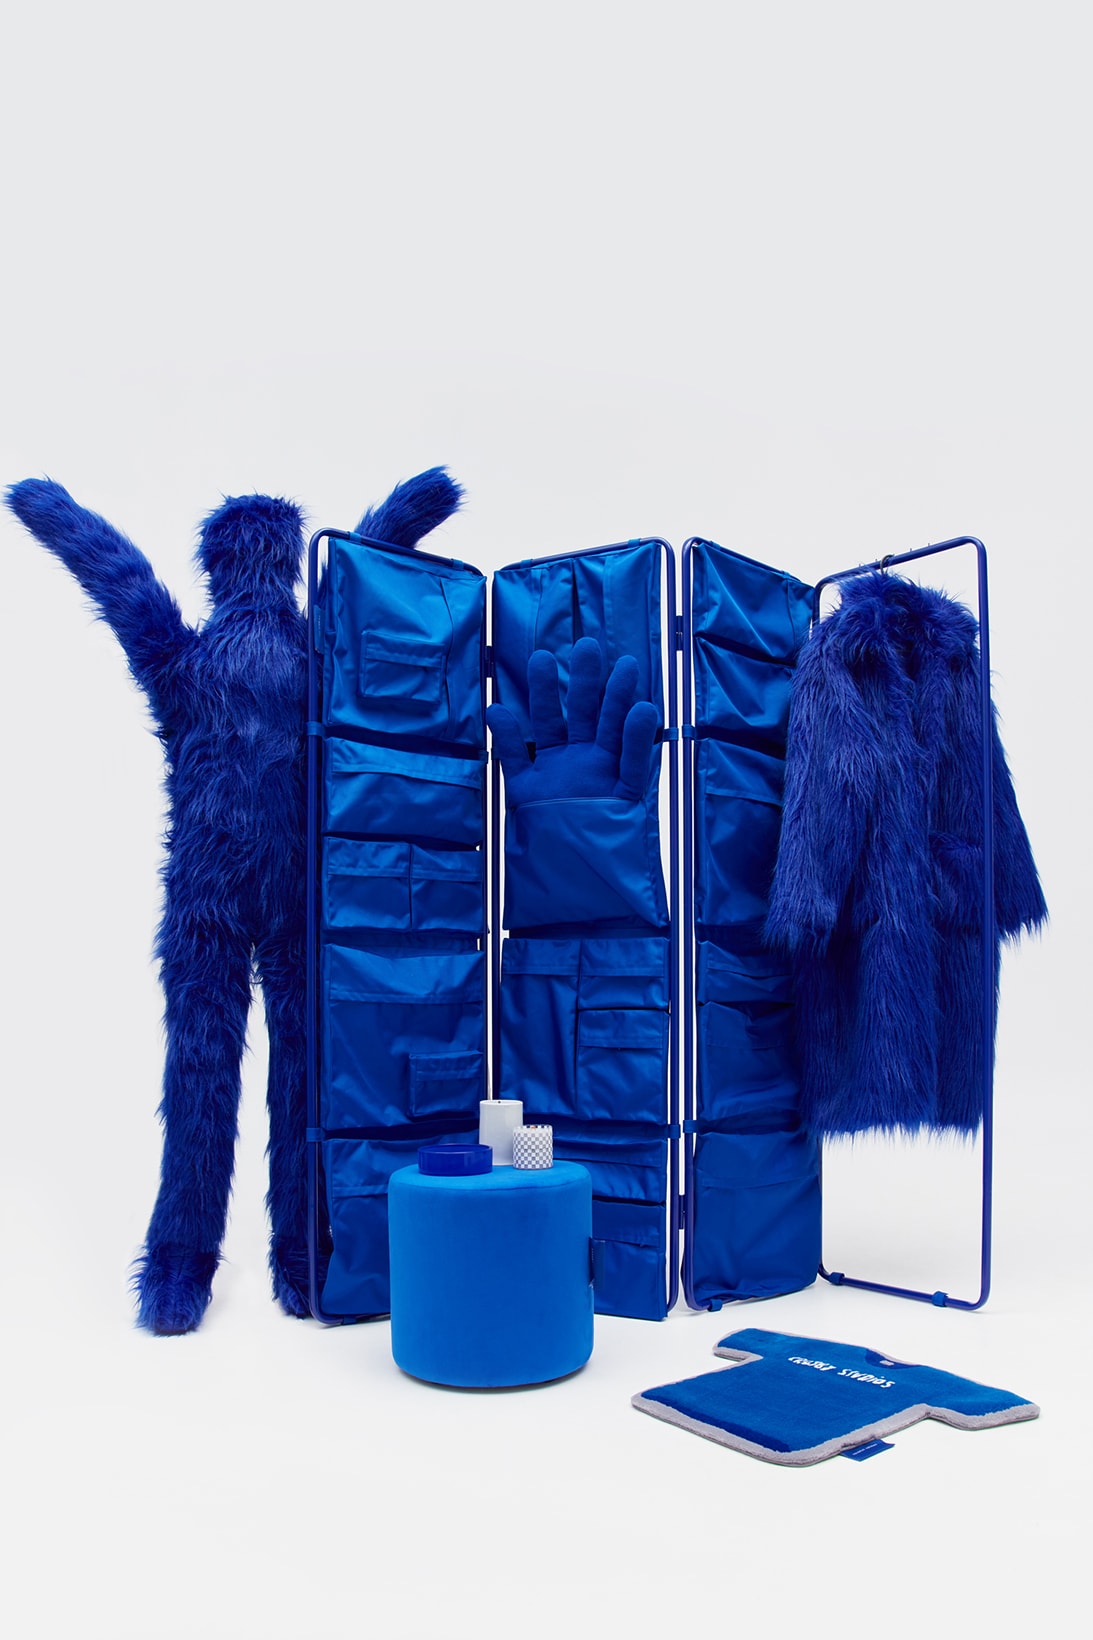 crosby studios homeware collection hbx ottoman chair blue fur coat carpet